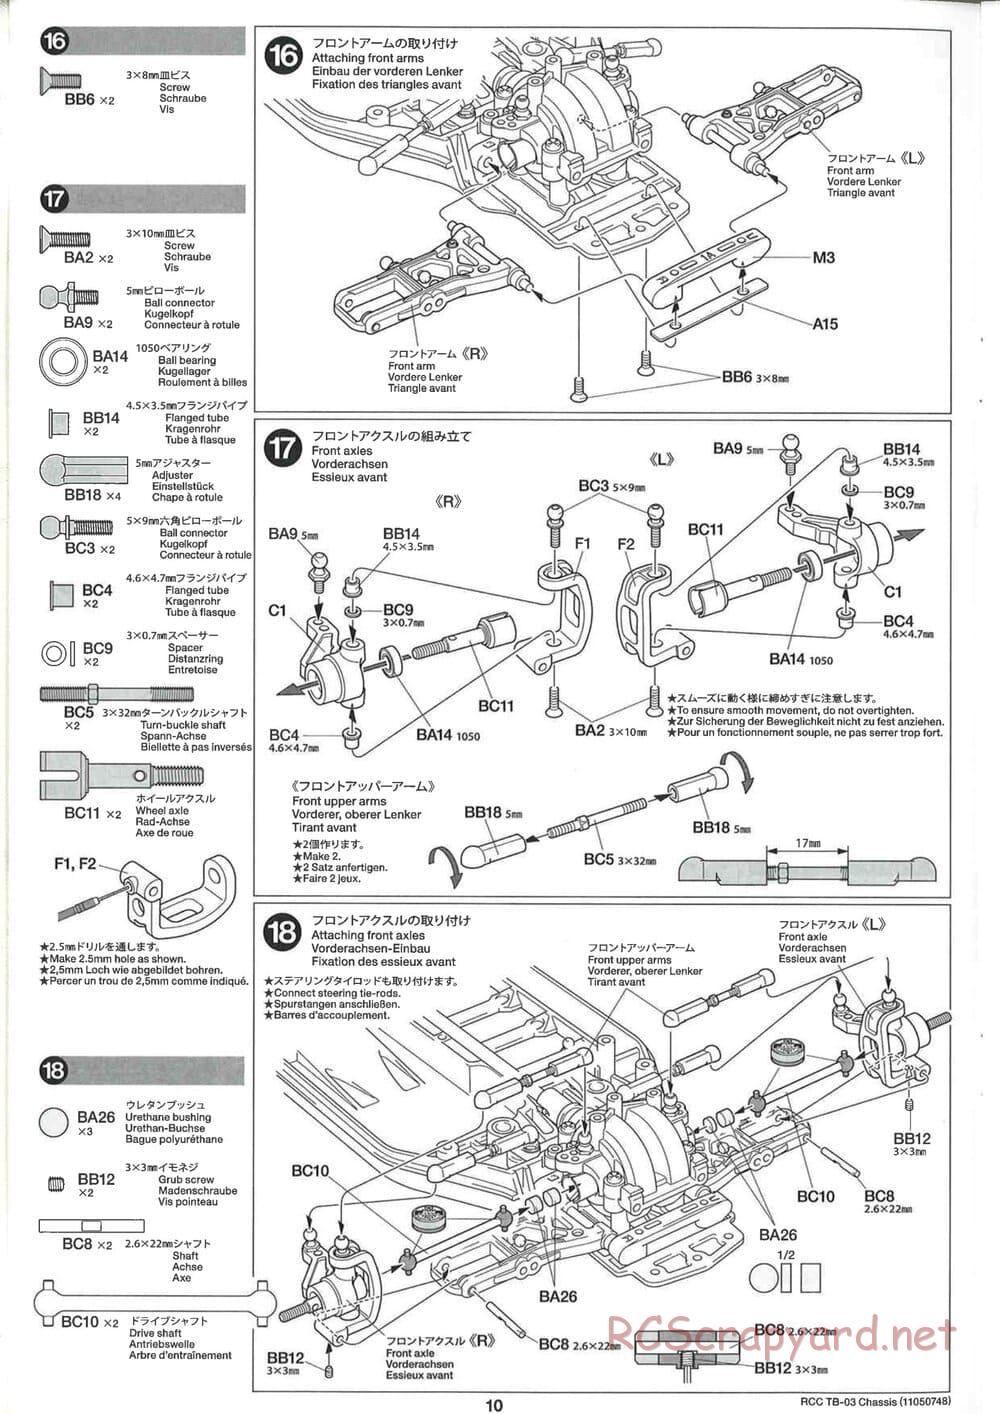 Tamiya - TB-03 Chassis - Manual - Page 10